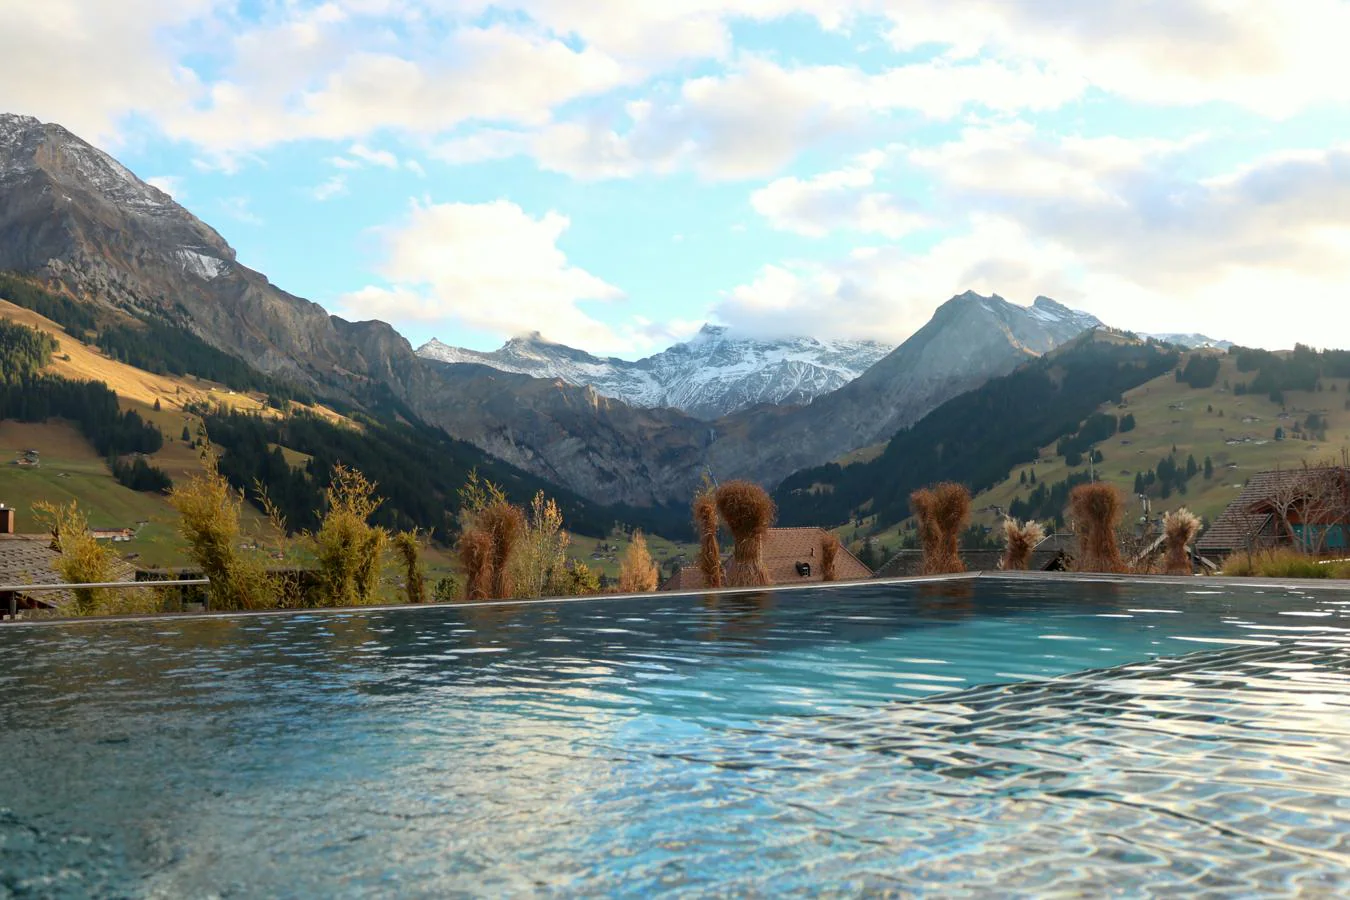 The Cambrian Hotel Adelboden Spa, Suiza. En plena naturaleza y con las montañas como únicas acompañantes, este hotel se encuentra en una ciudad de esquí de renombre, Adelboden. Mucha gente decide visitar el hotel y ya aprovechar para visitar la ciudad, y no al revés. La piscina rodeada de verde (o de nieve, según la temporada del año en la que se visite) tiene mucho que ver con que sea uno de los resorts más demandados de la zona.